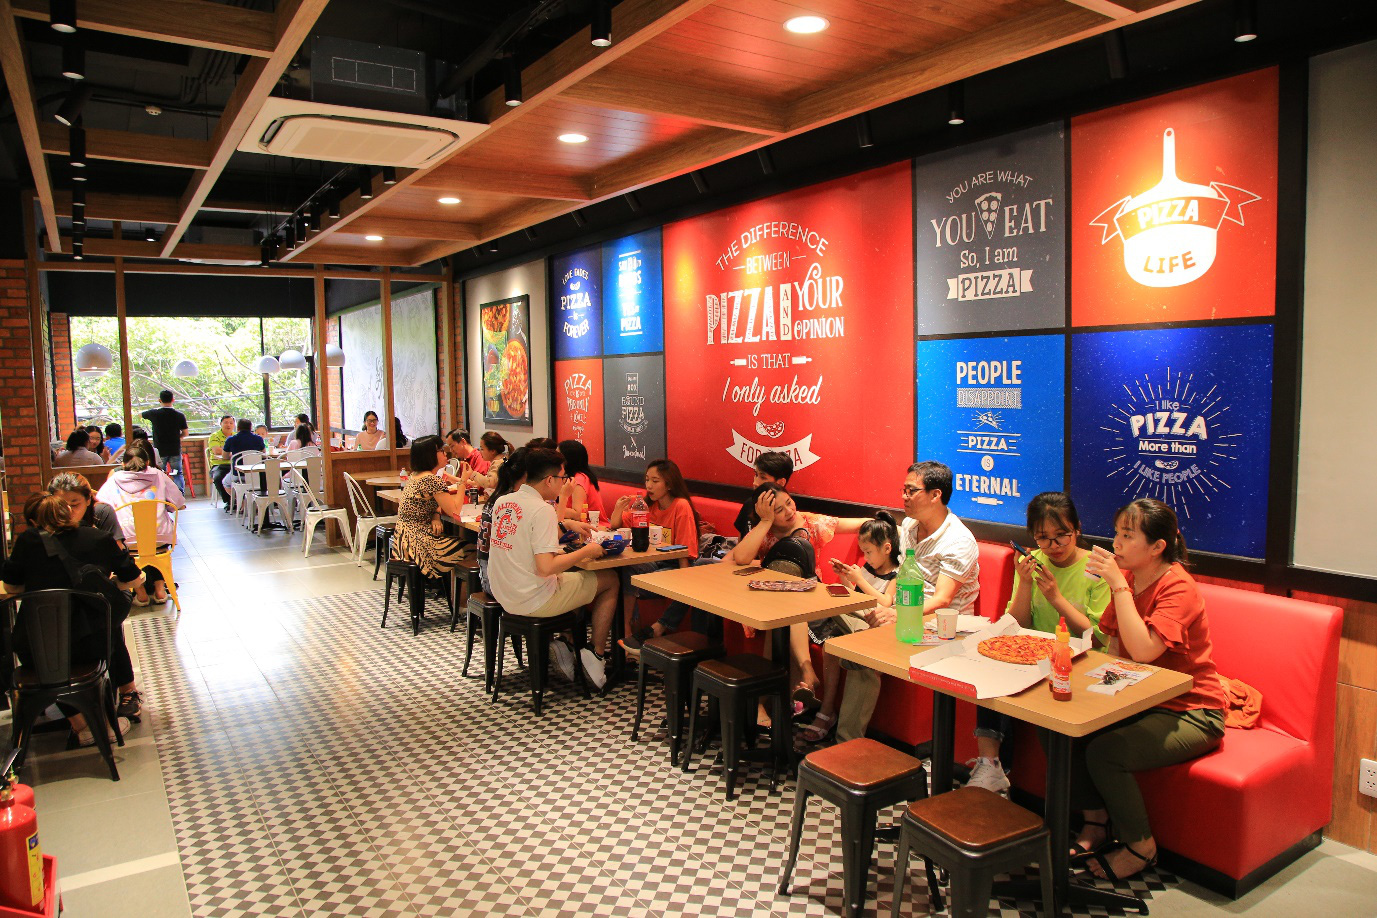 Domino’s – Thương hiệu Pizza hàng đầu thế giới đã “hạ cánh” tại Biên Hoà, đánh dấu sự phát triển chuỗi hệ thống Pizza Mỹ tại các tỉnh thành - Ảnh 3.